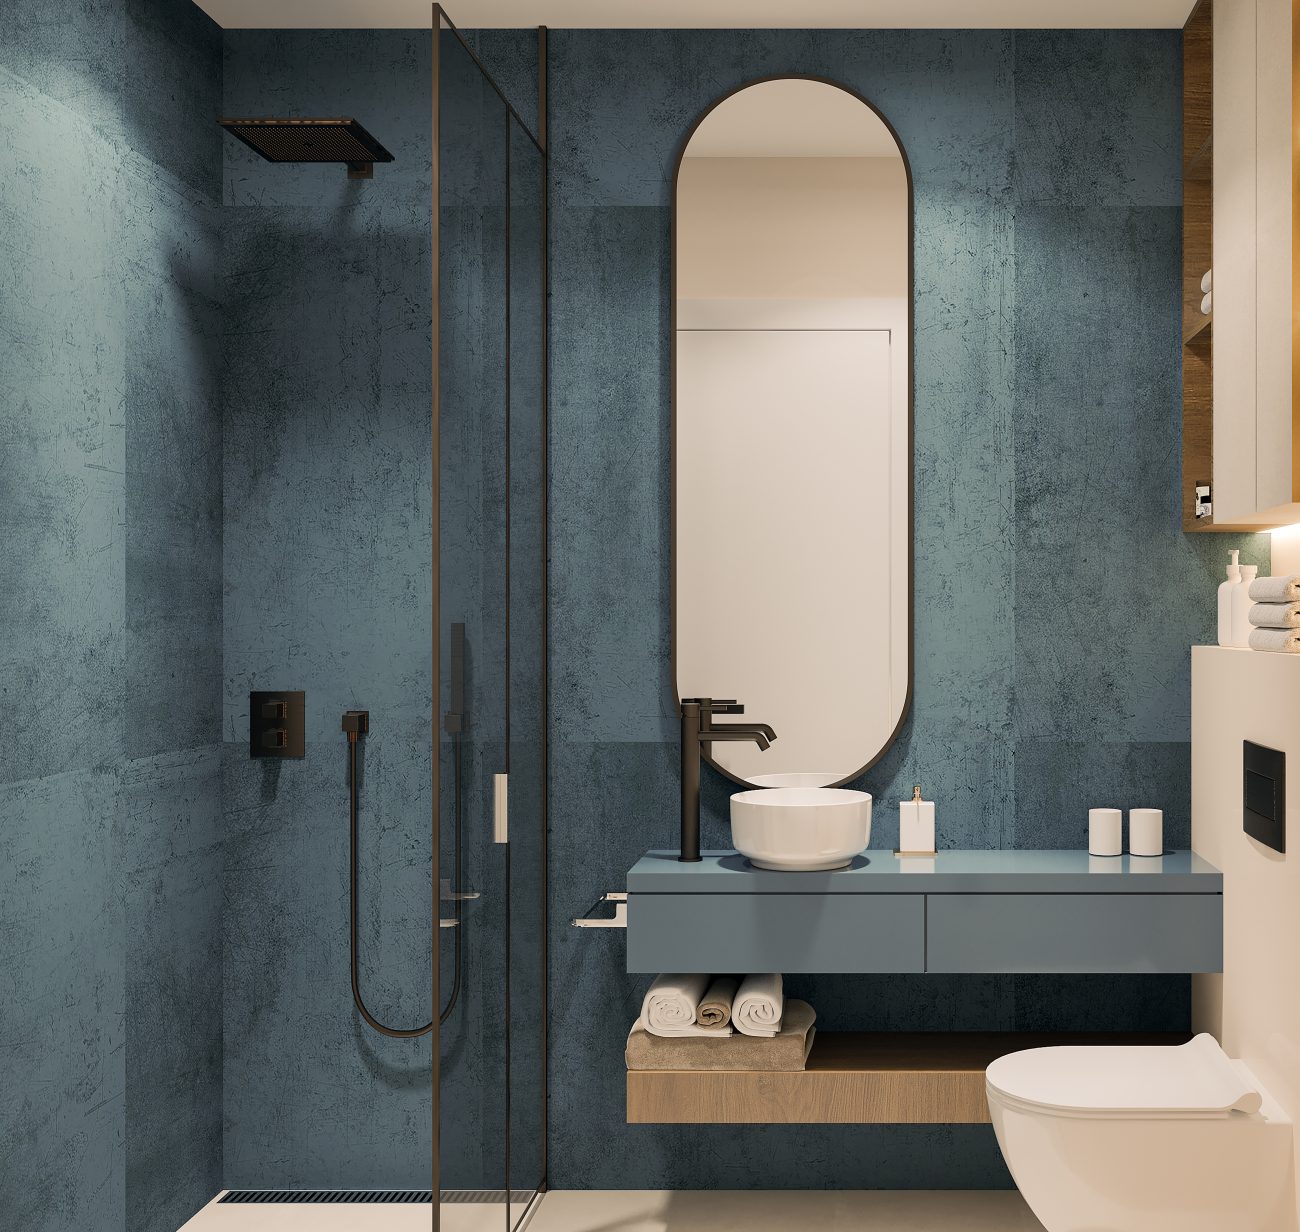 Salle de bain avec rangement discret intégré dans un meuble vanité